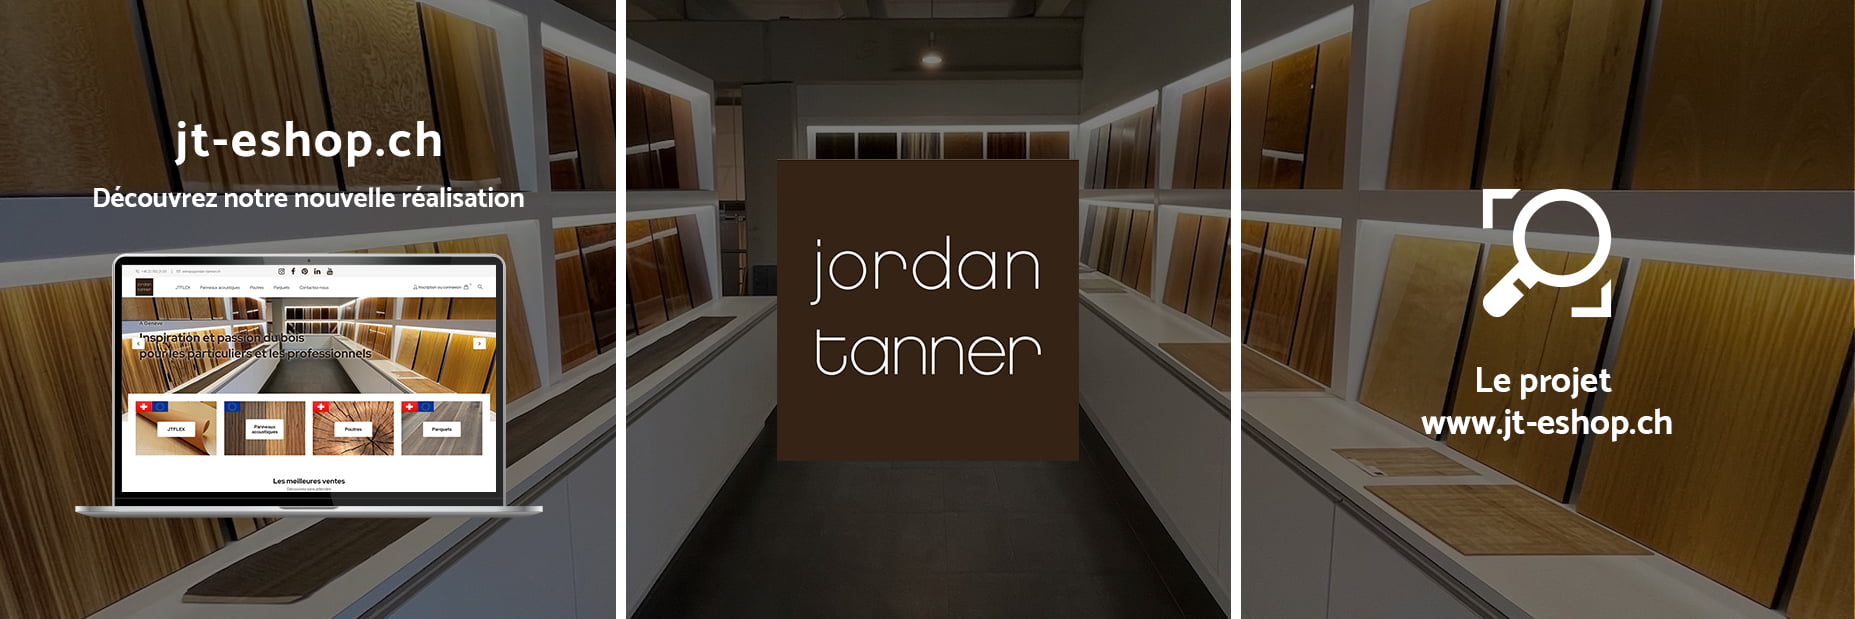 jordan-tanner.ch - Réalisation PrestaShop & WordPress by S2A Solution - Agence de communication à Genève